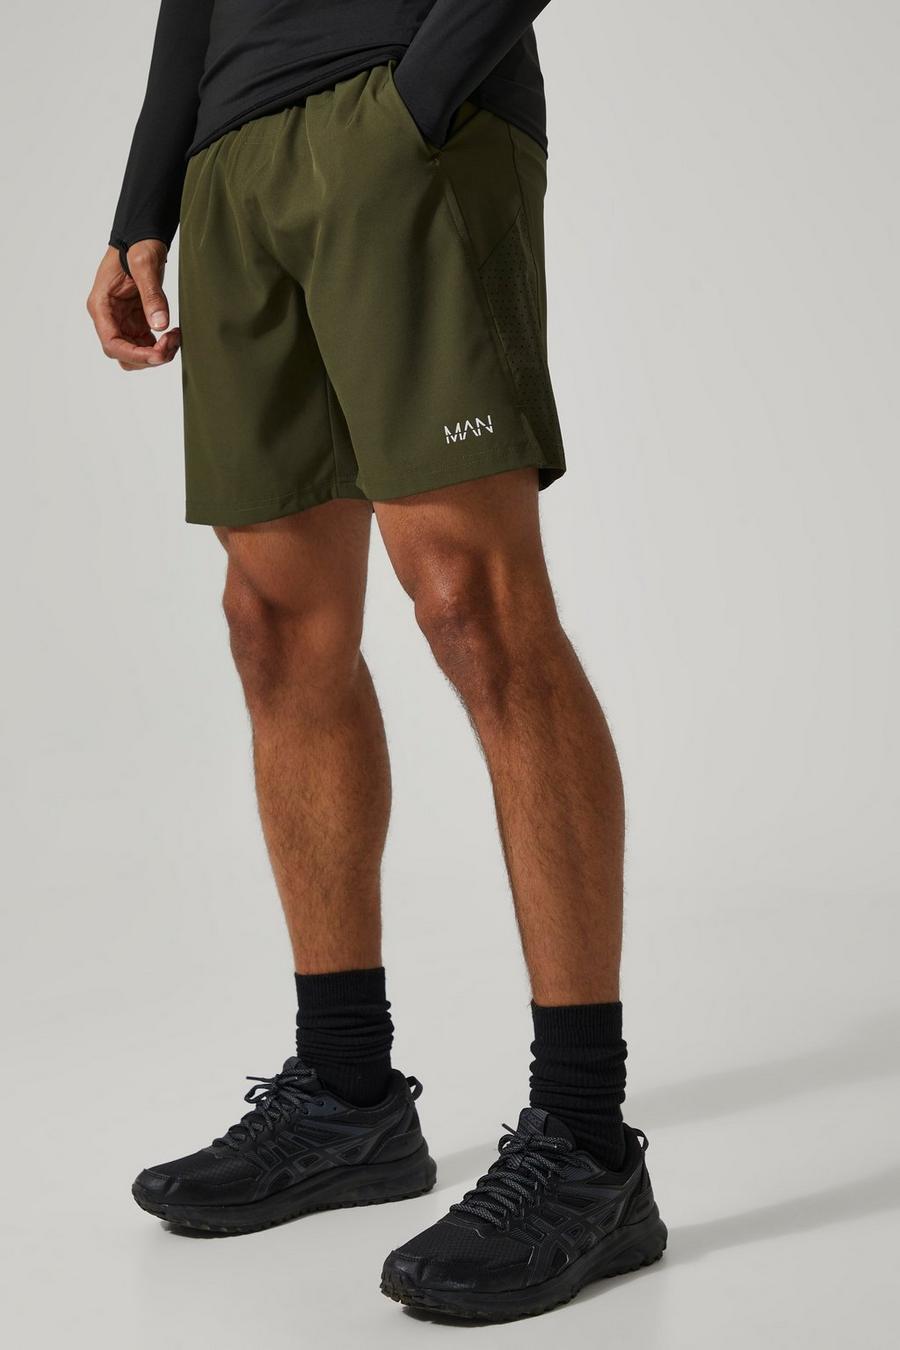 Man Active Mesh-Shorts, Khaki